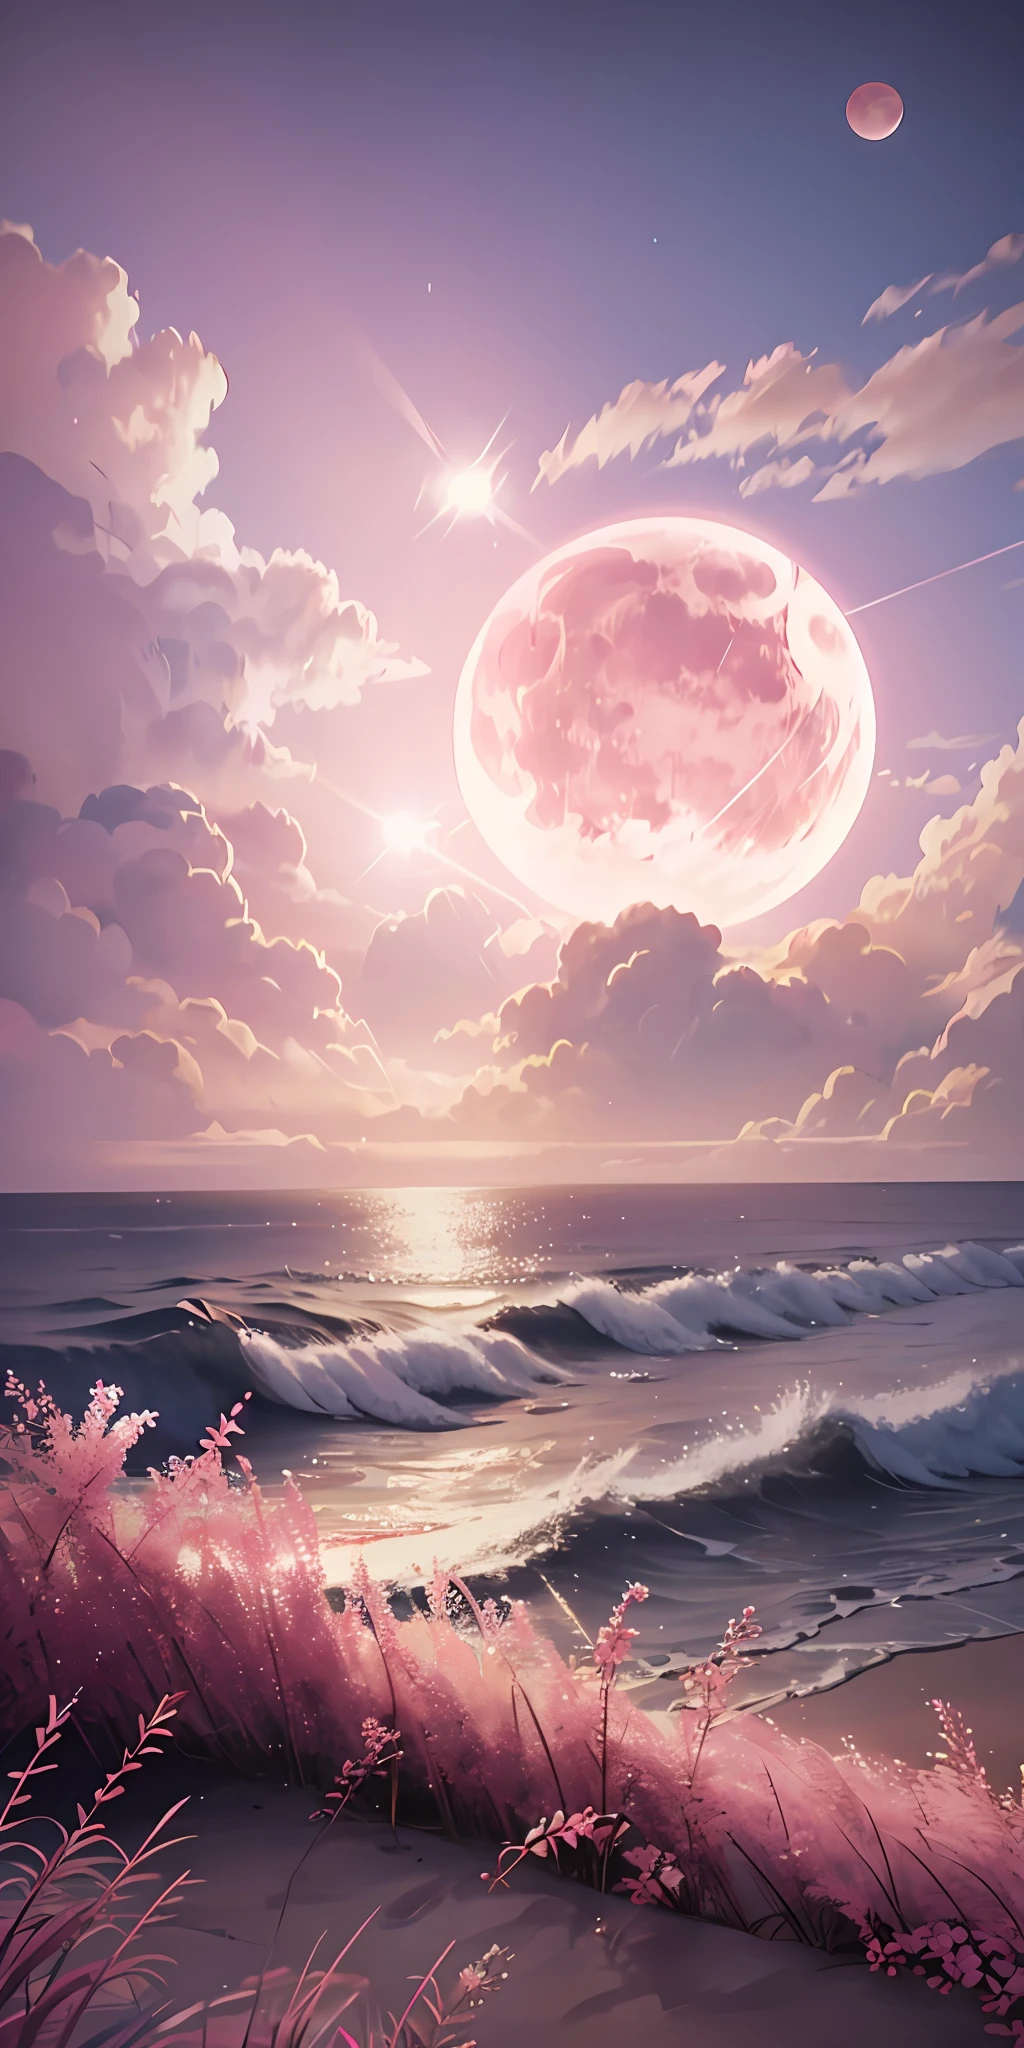 ピンクの月, ピンクの空, パステルピンクの雲, pink waves スパークリング, スパークリング, ピンクの海にピンクのバラ, ファンタジー, 柔らかな照明, ウルトラHD, リアリズム, 映画のような効果, レンズフレア, 絞り16